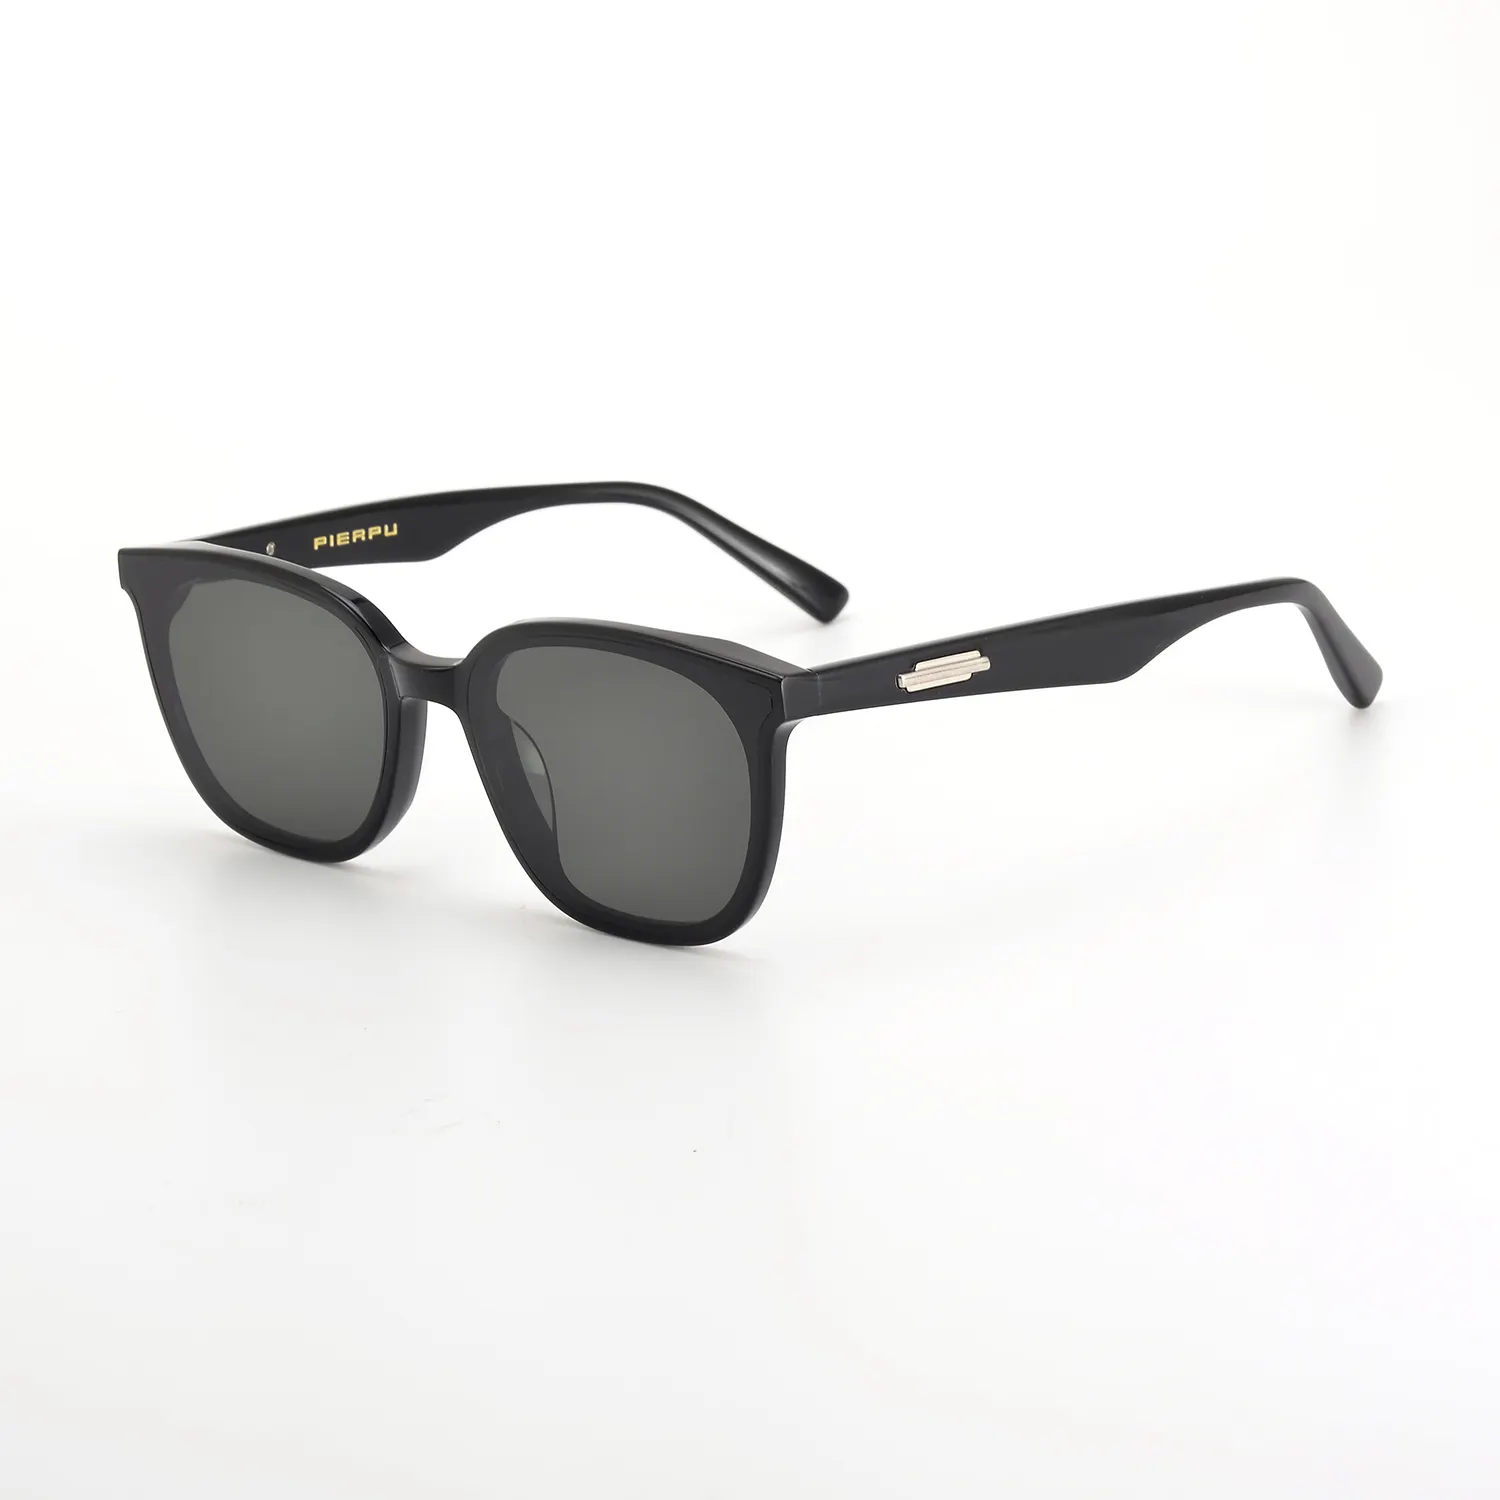 Nueva moda de marca de lujo diseño GM gafas para hombres mujeres visión nocturna LILIT gafas de sol Placa de acetato lentes gafas de sol UV400